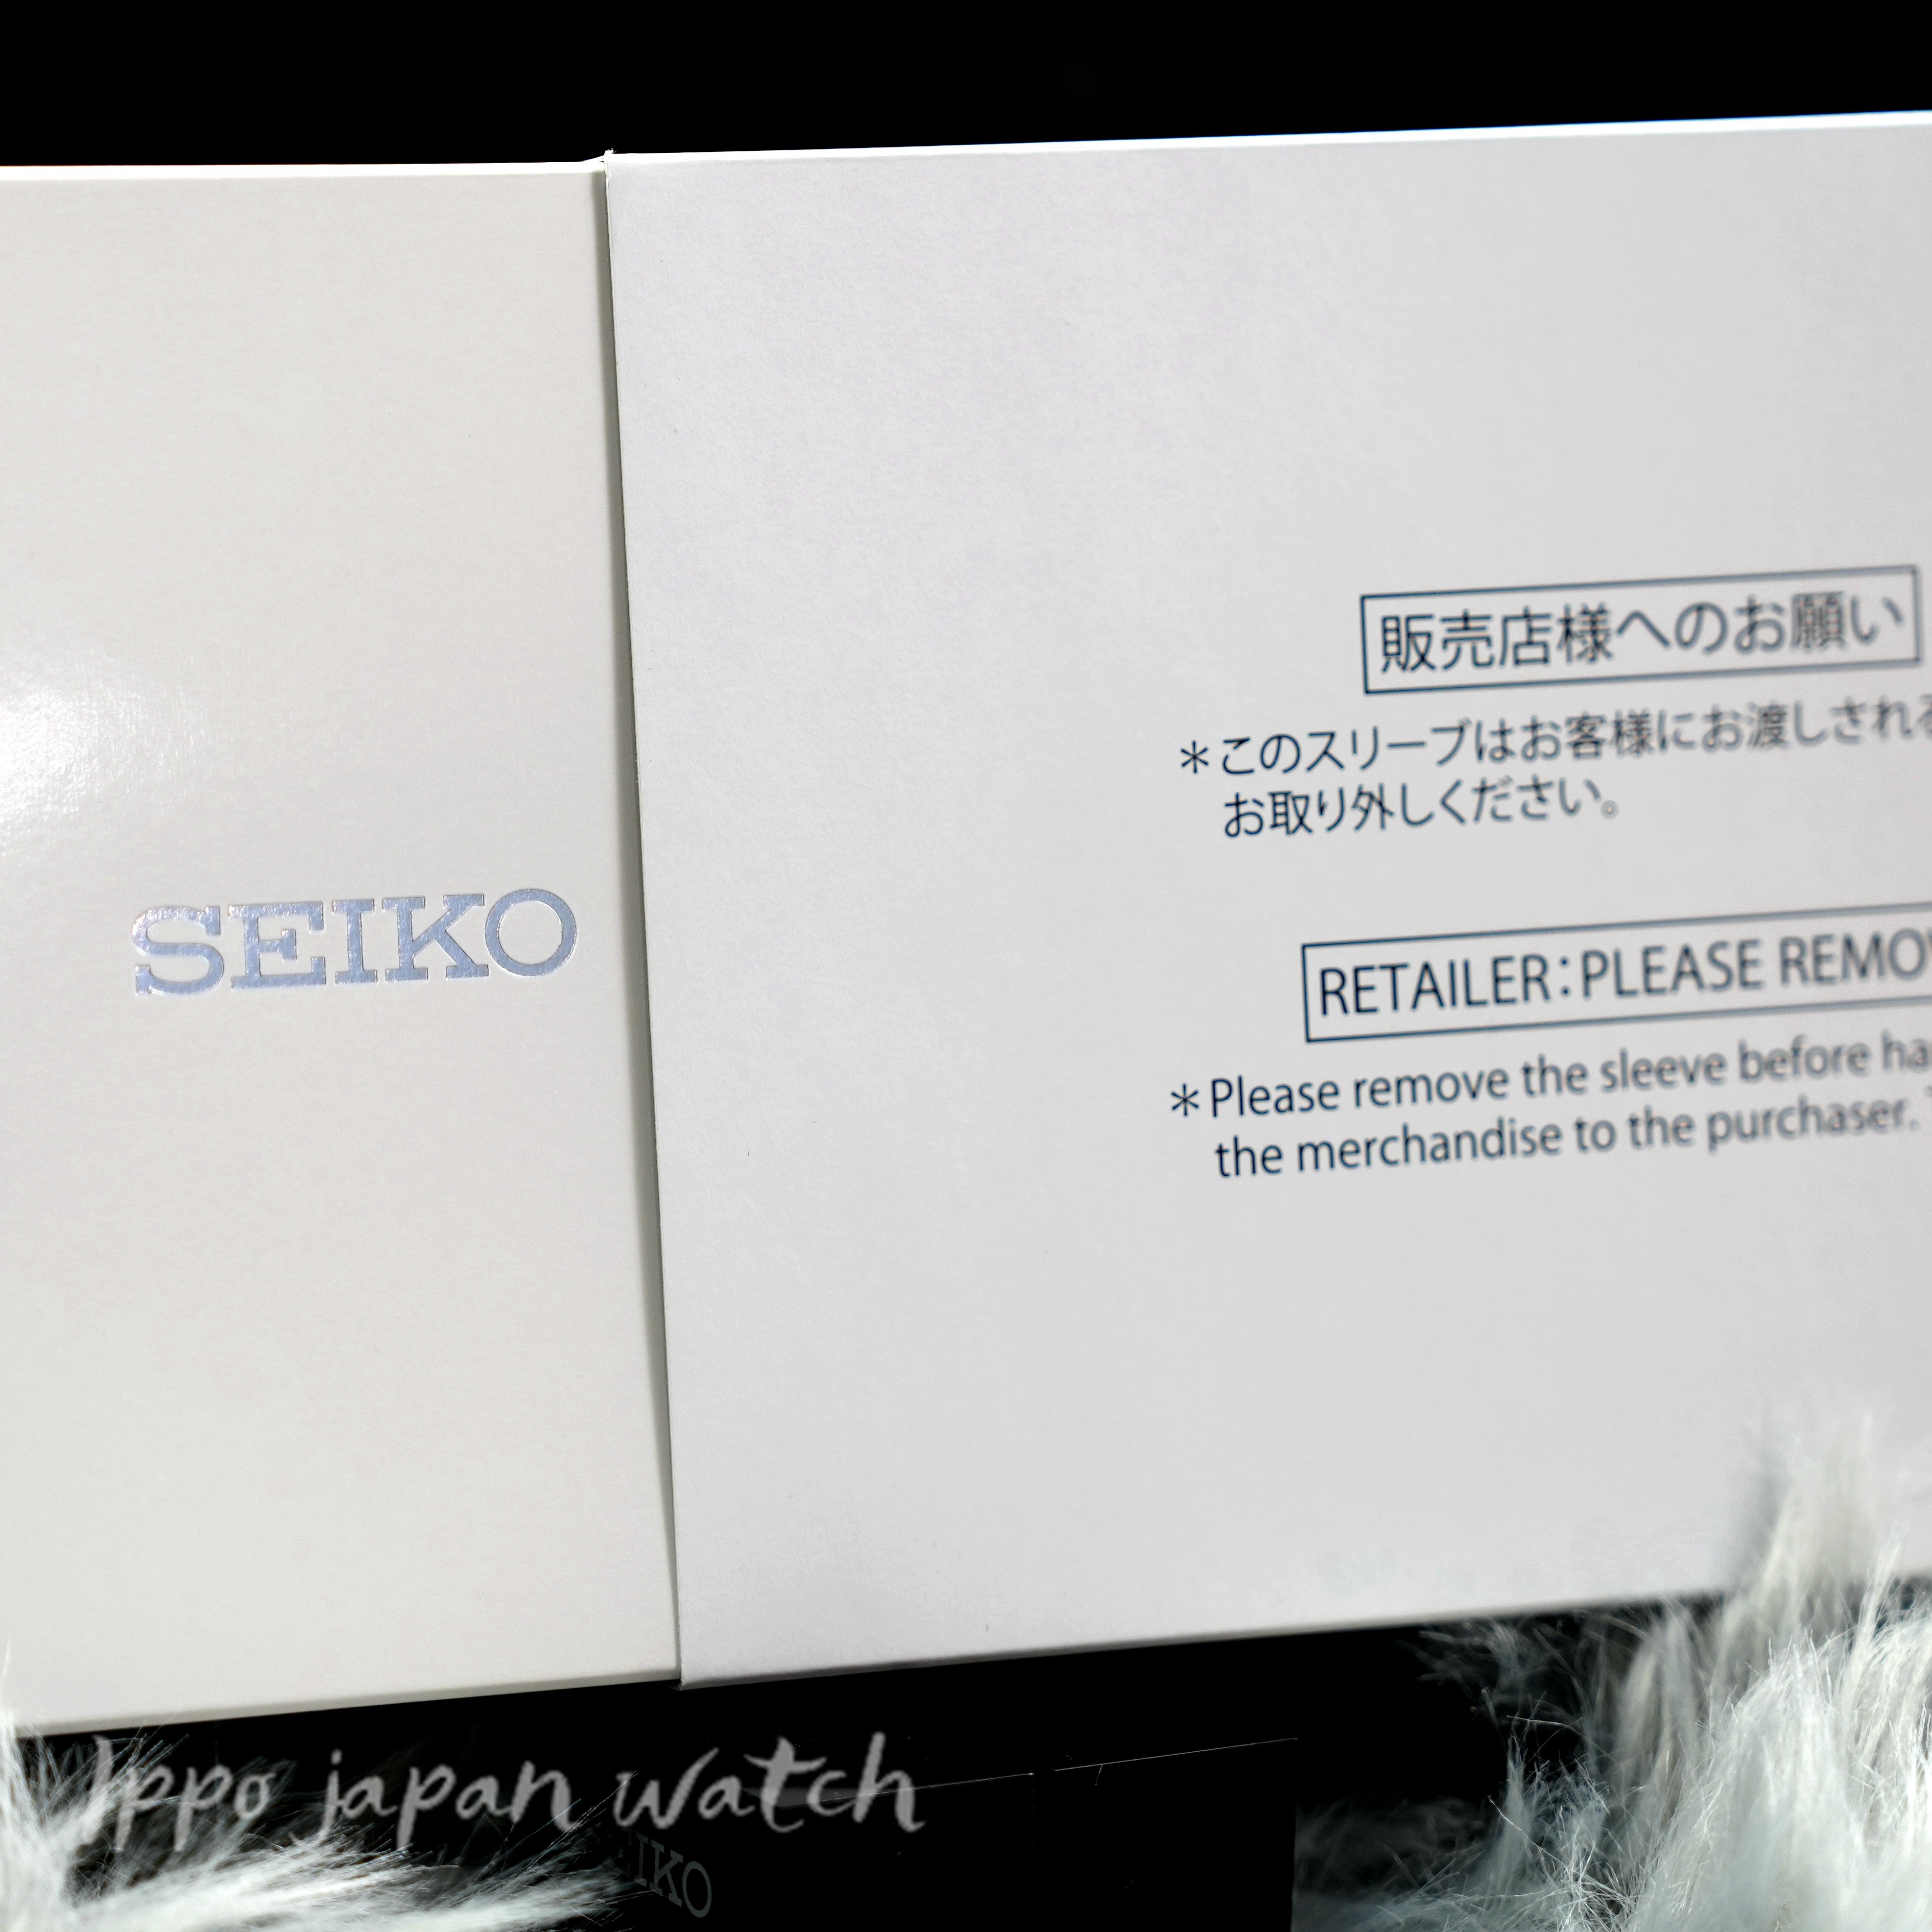 SEIKO Presage SARX093 SPB277J1 Automatic stainless watch - IPPO JAPAN WATCH 